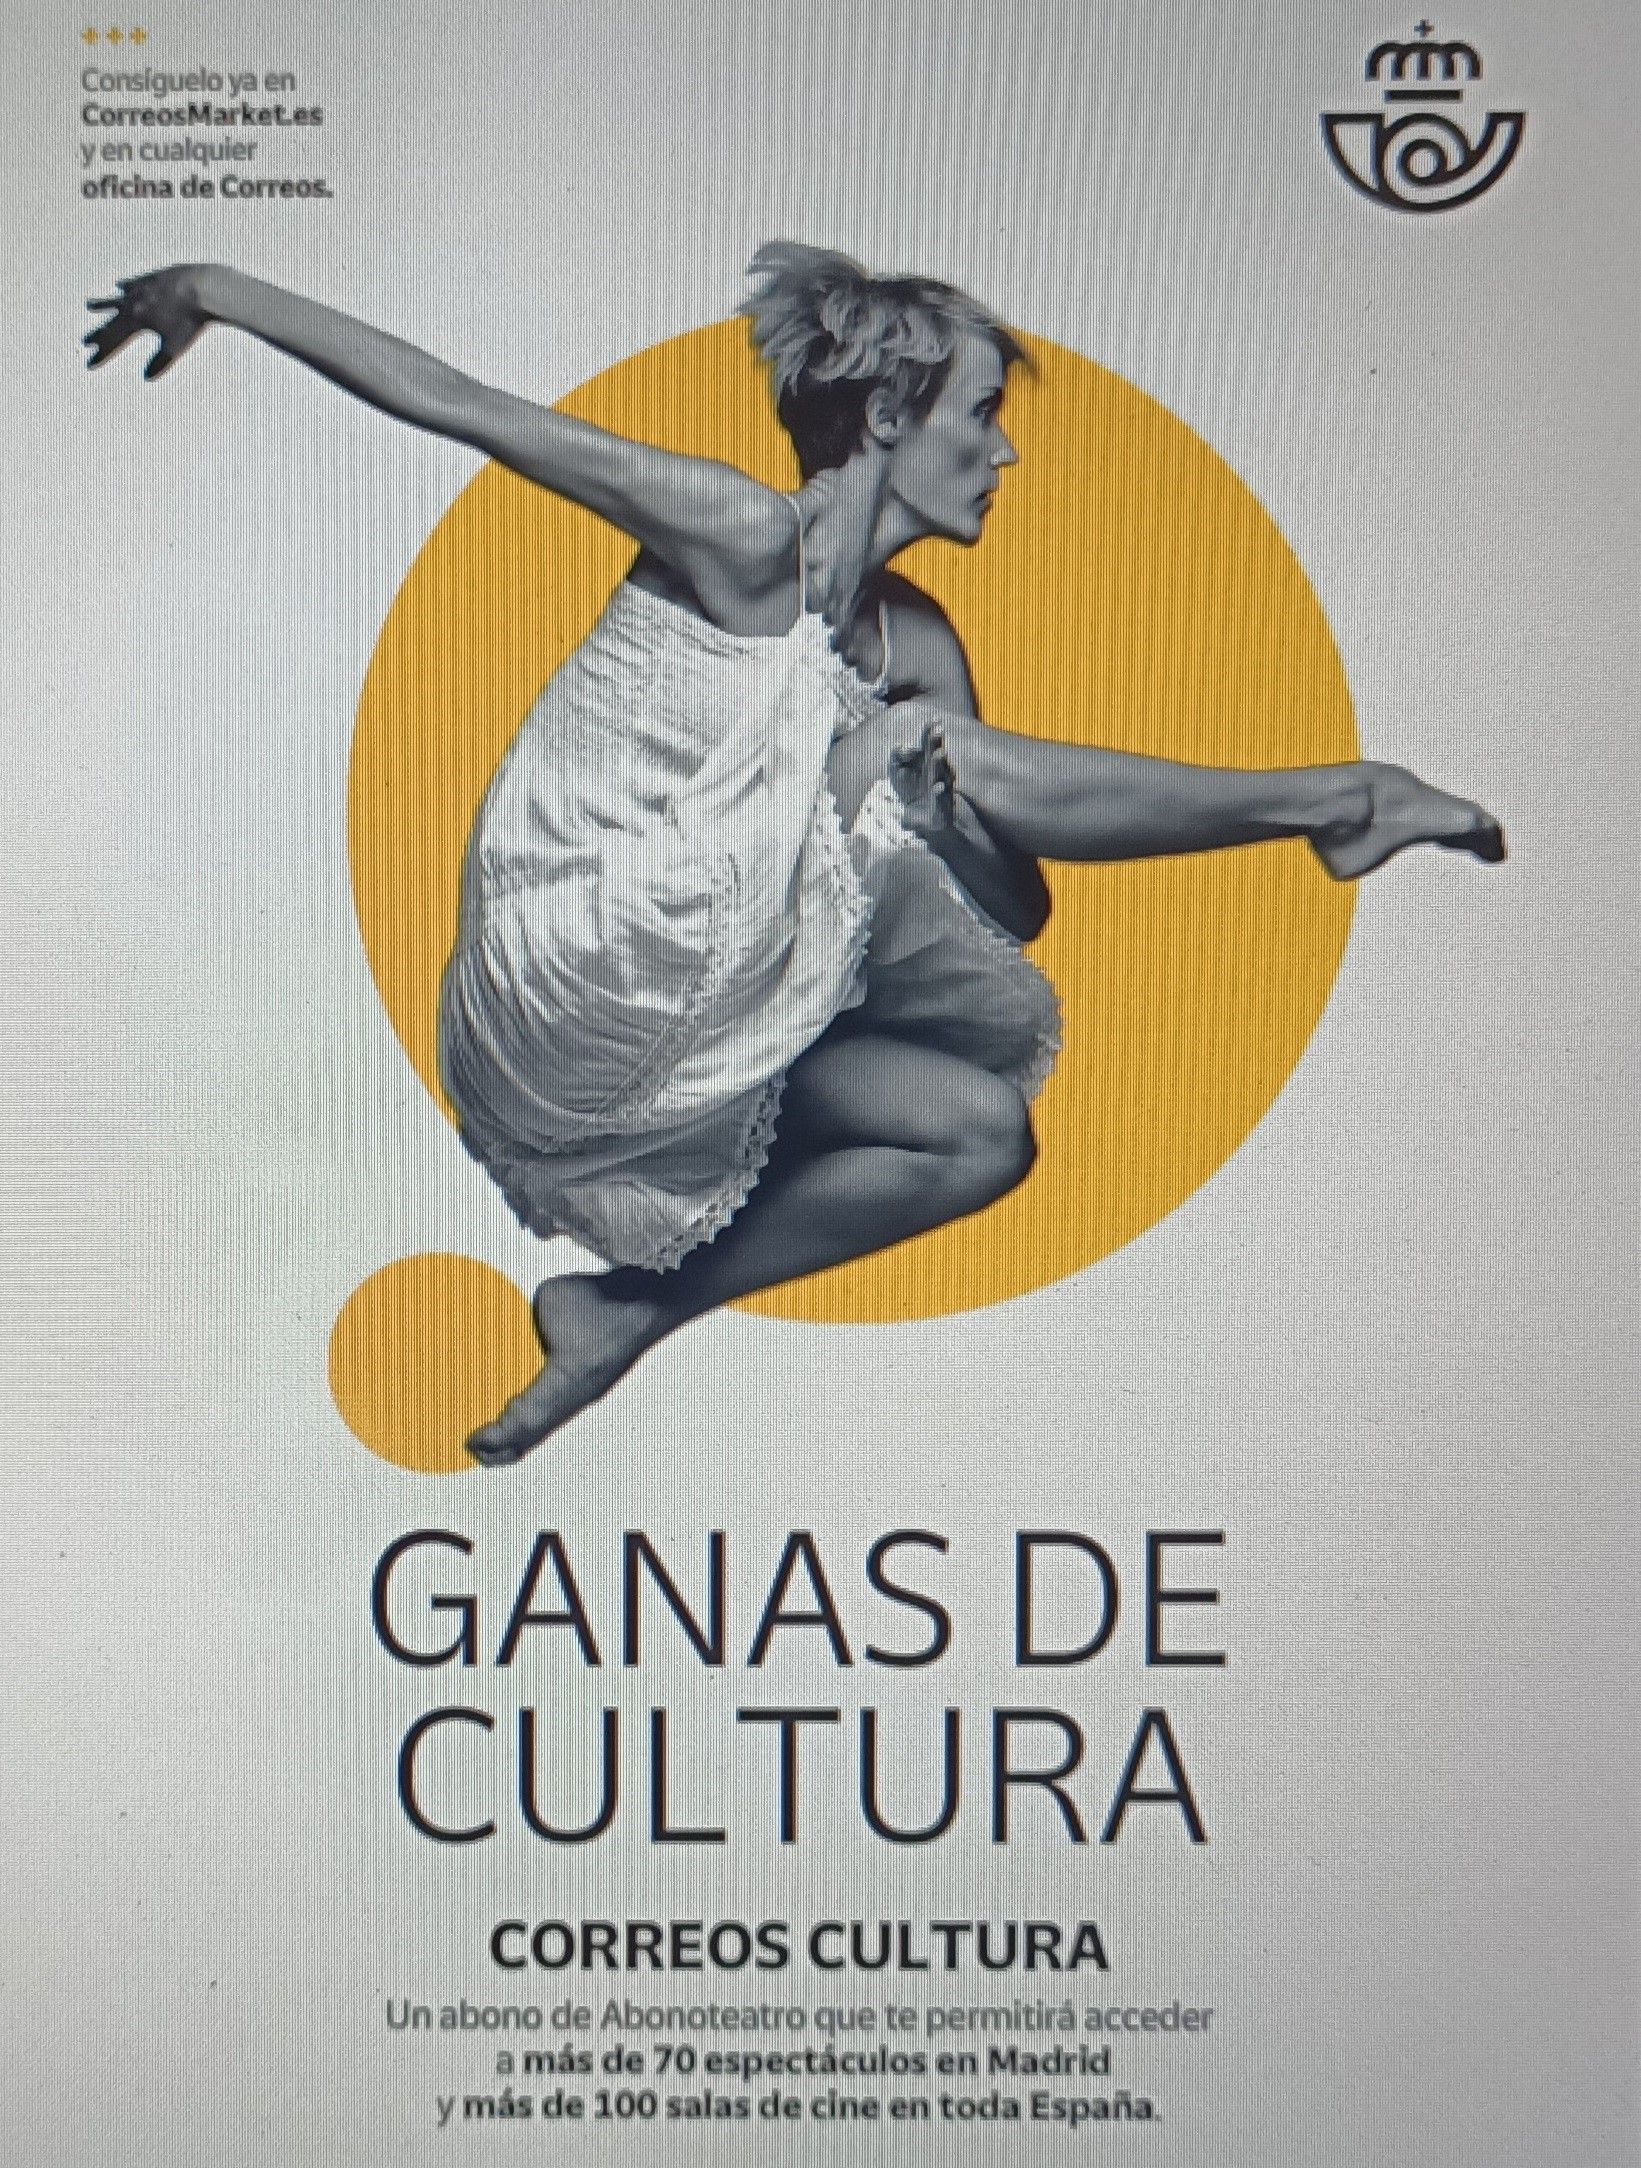 El nuevo abono cultural con el que se podrá acceder a más de 70 espectáculos en Madrid